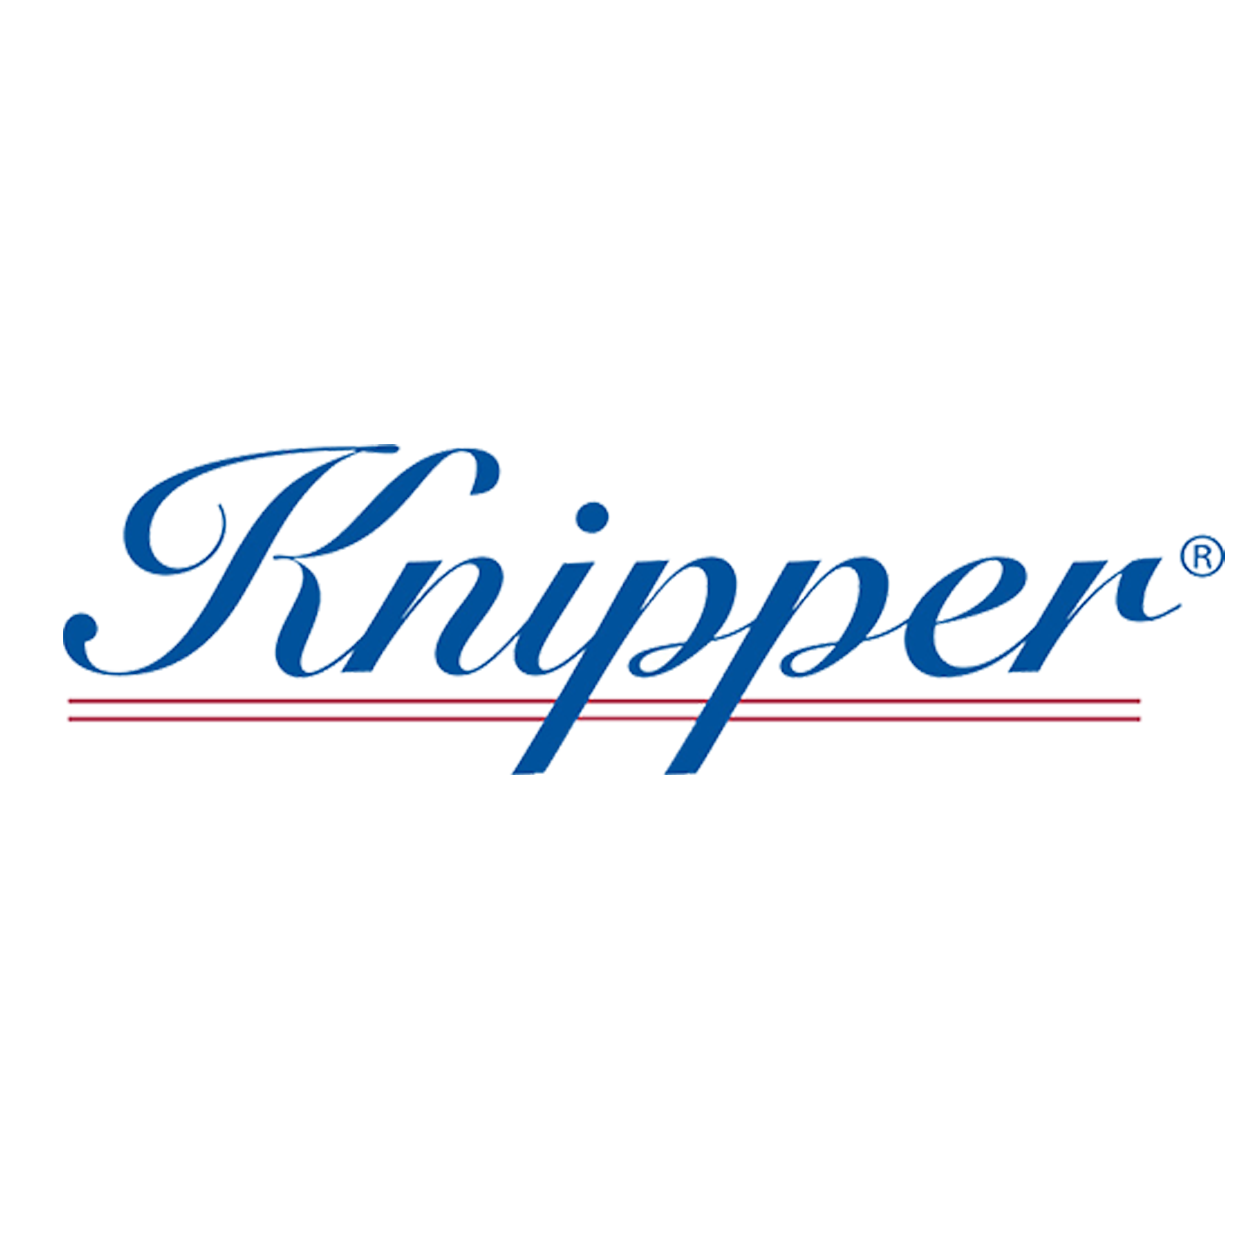 Knipper